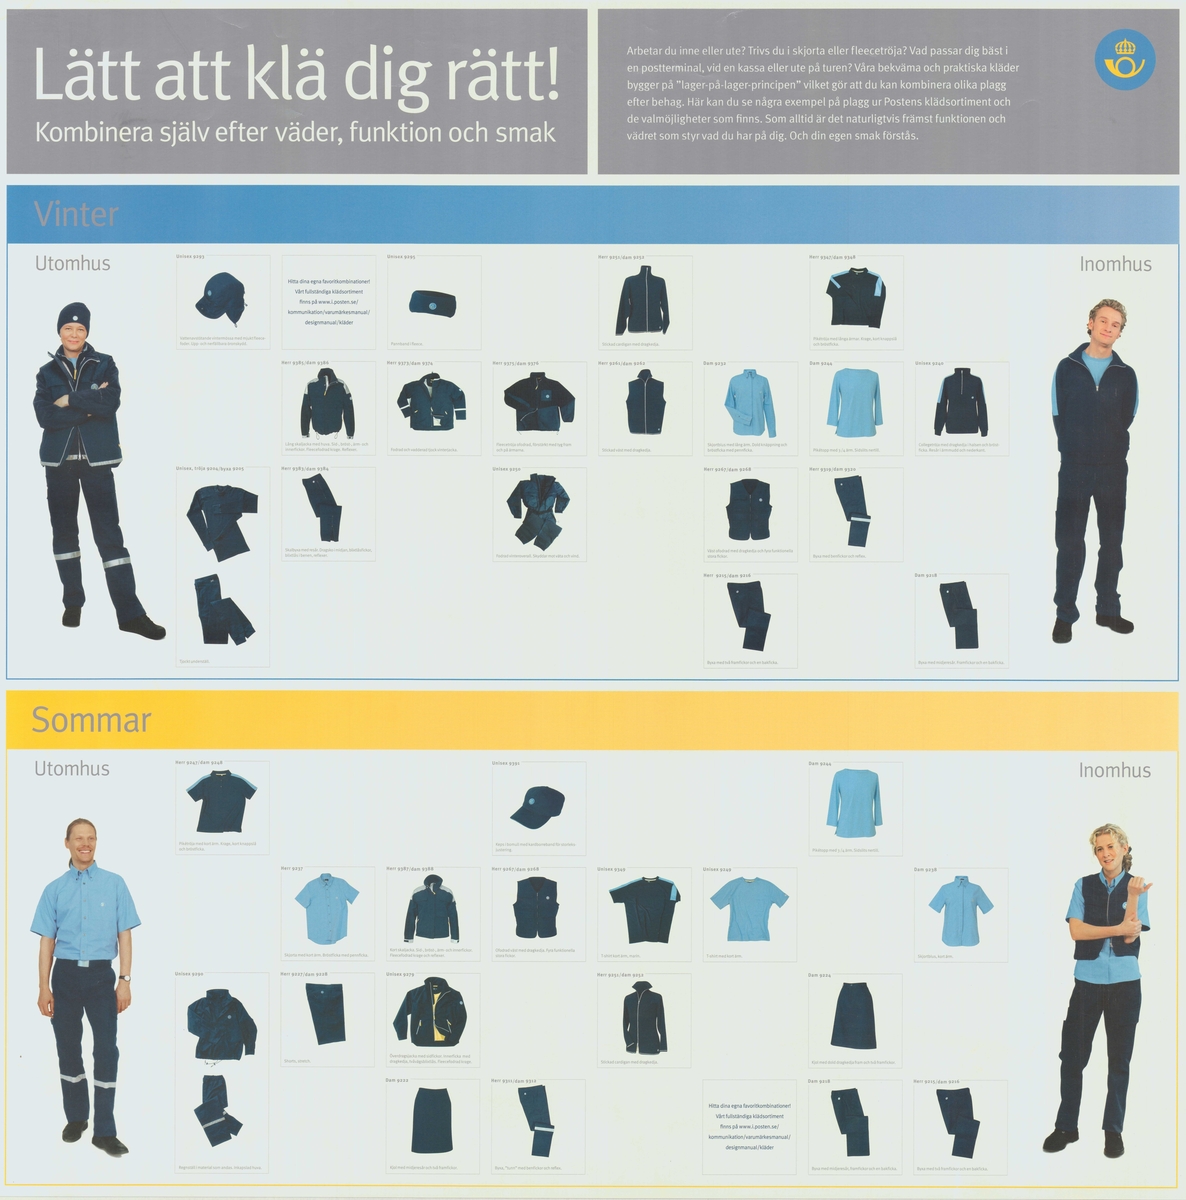 Postens klädsortiment / uniformer.